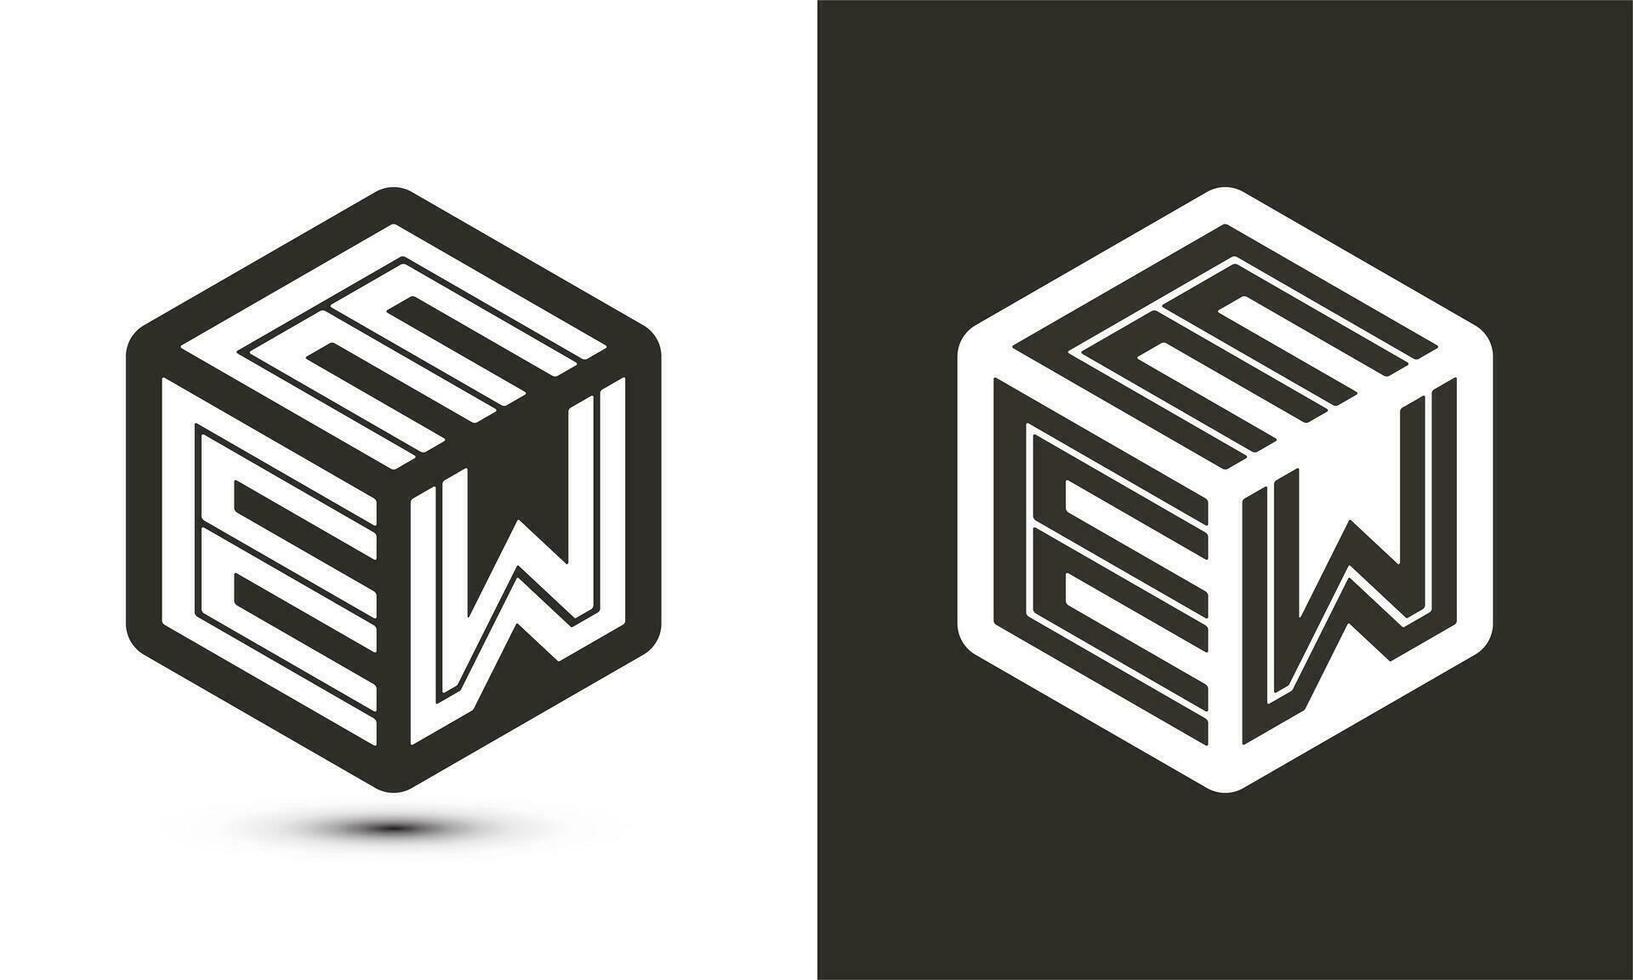 eew brief logo ontwerp met illustrator kubus logo, vector logo modern alfabet doopvont overlappen stijl.